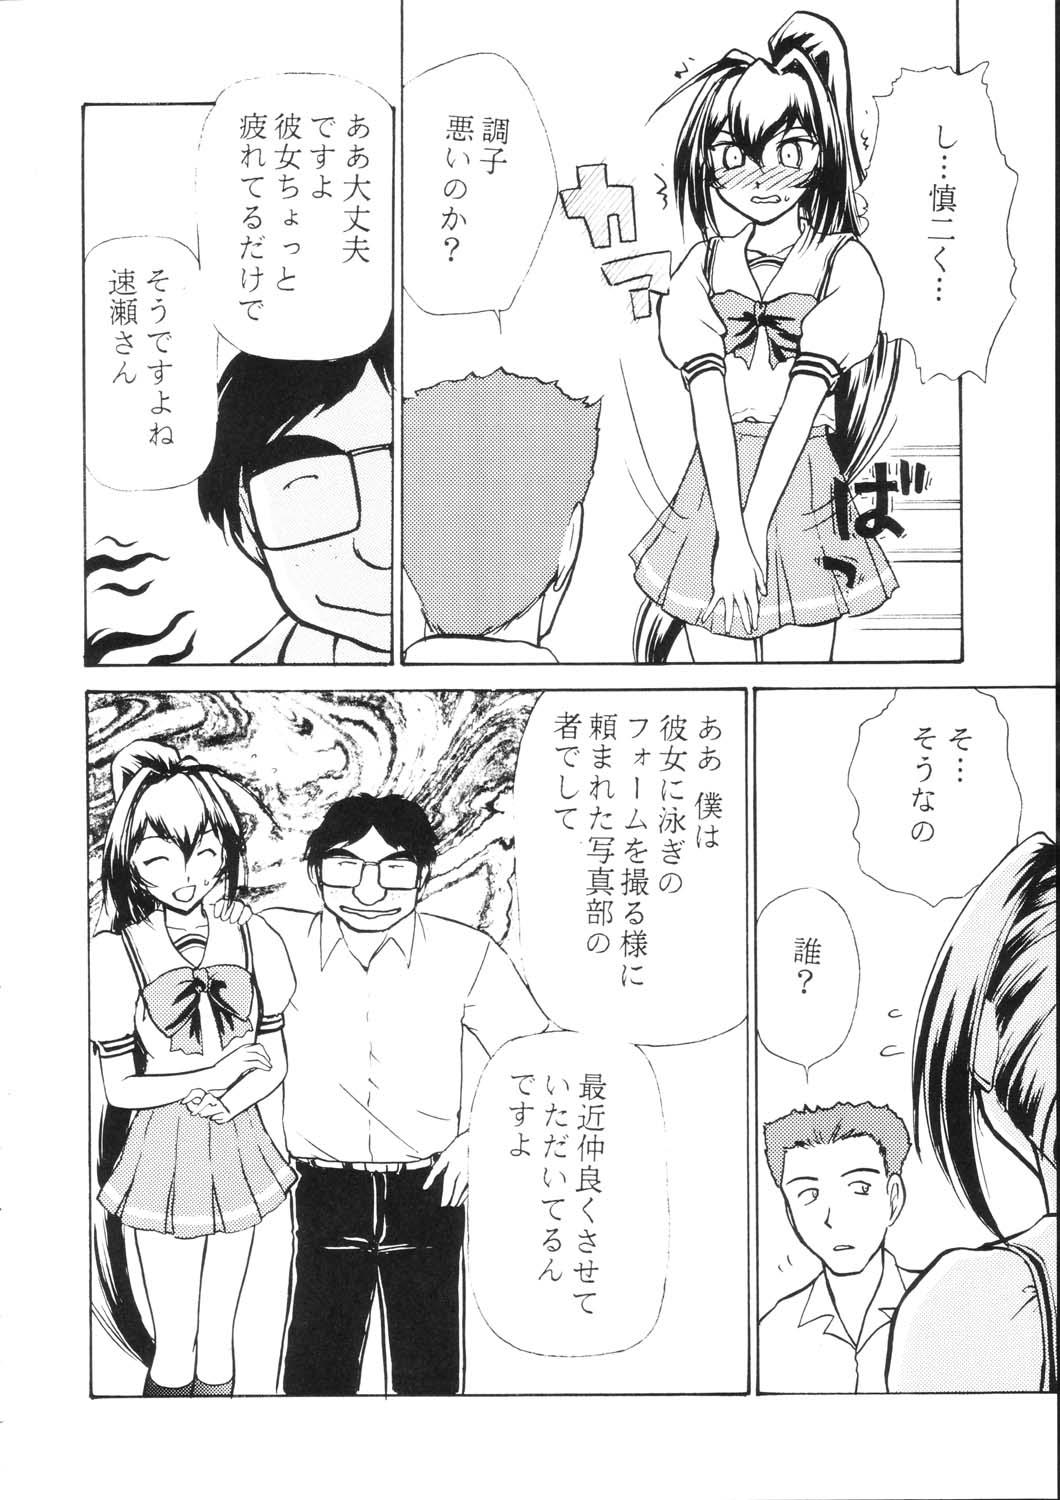 Pounded Namida Tsuki Go - Kimi ga nozomu eien Deep - Page 9